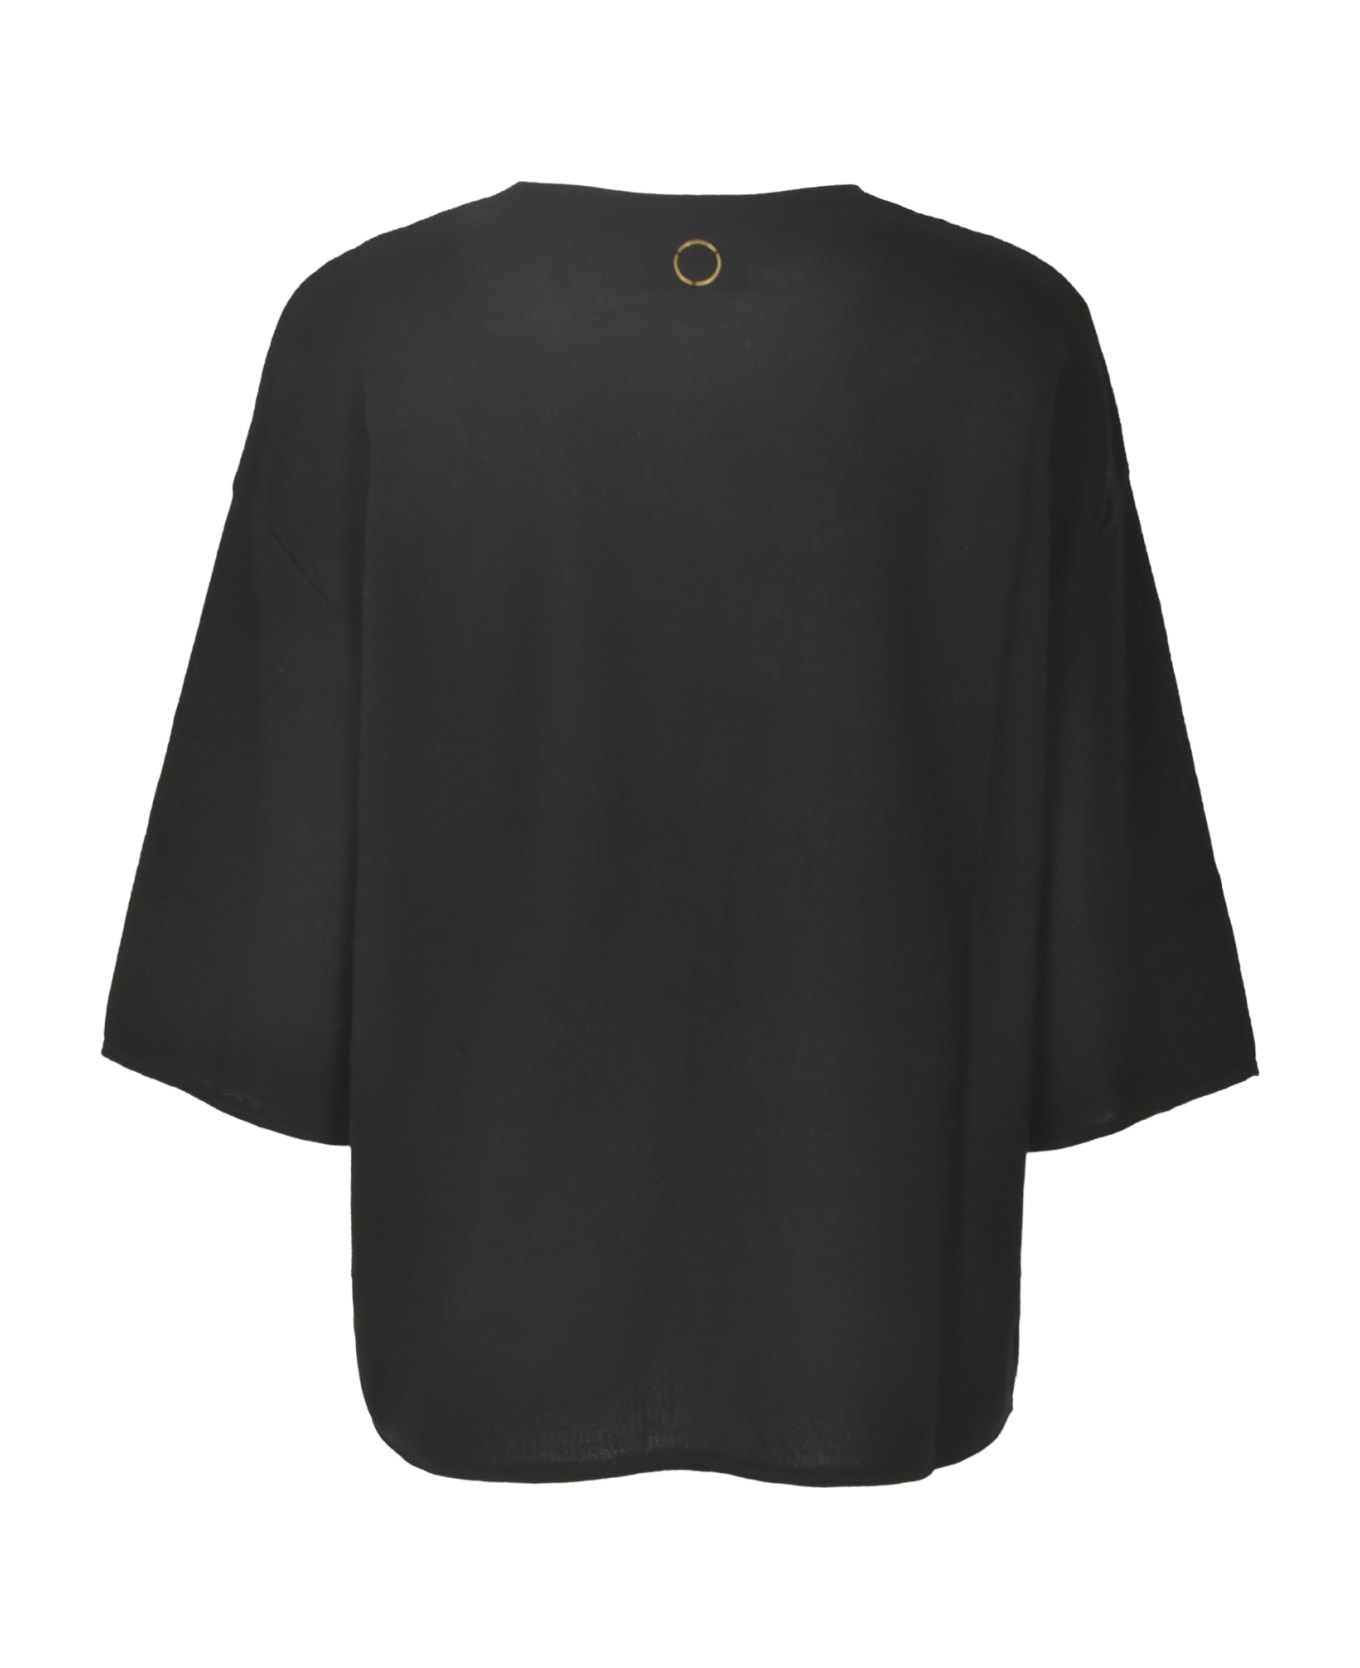 Oyuna Round Neck Pullover - Black